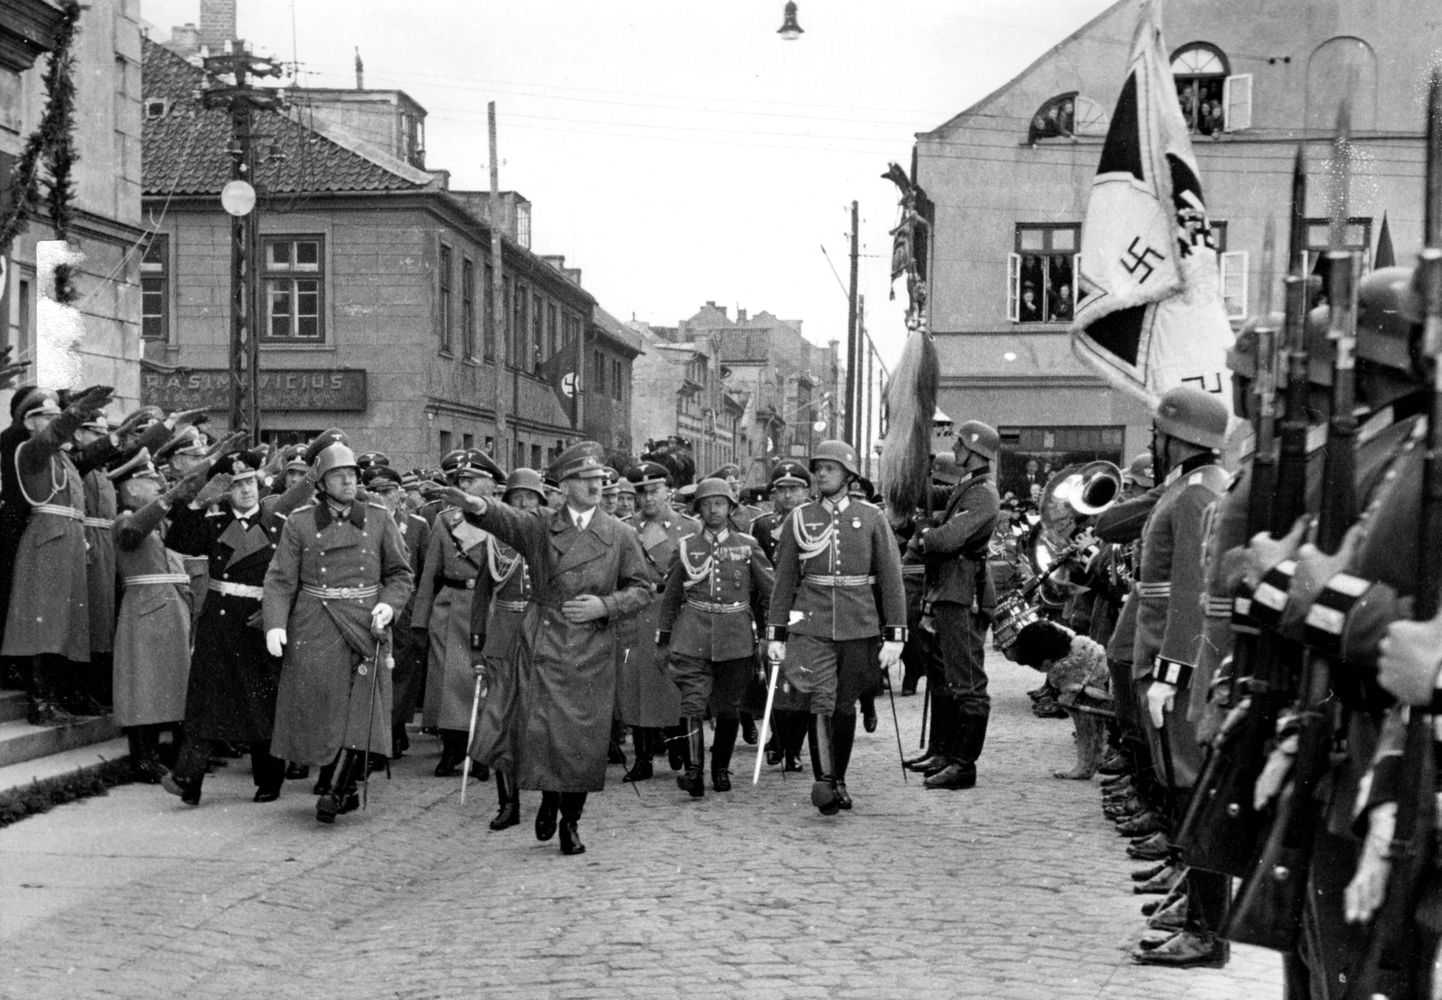 Adolf Hitleri jalutuskäik Klaipėdas, mille natsionaalsotsialistliku Saksamaa võimud nimetasid ümber Memeliks. 1939. aastal oli Leedu sunnitud linna loovutama Saksamaale. Rahvasteliit oli selleks ajaks oma mõju kaotanud.